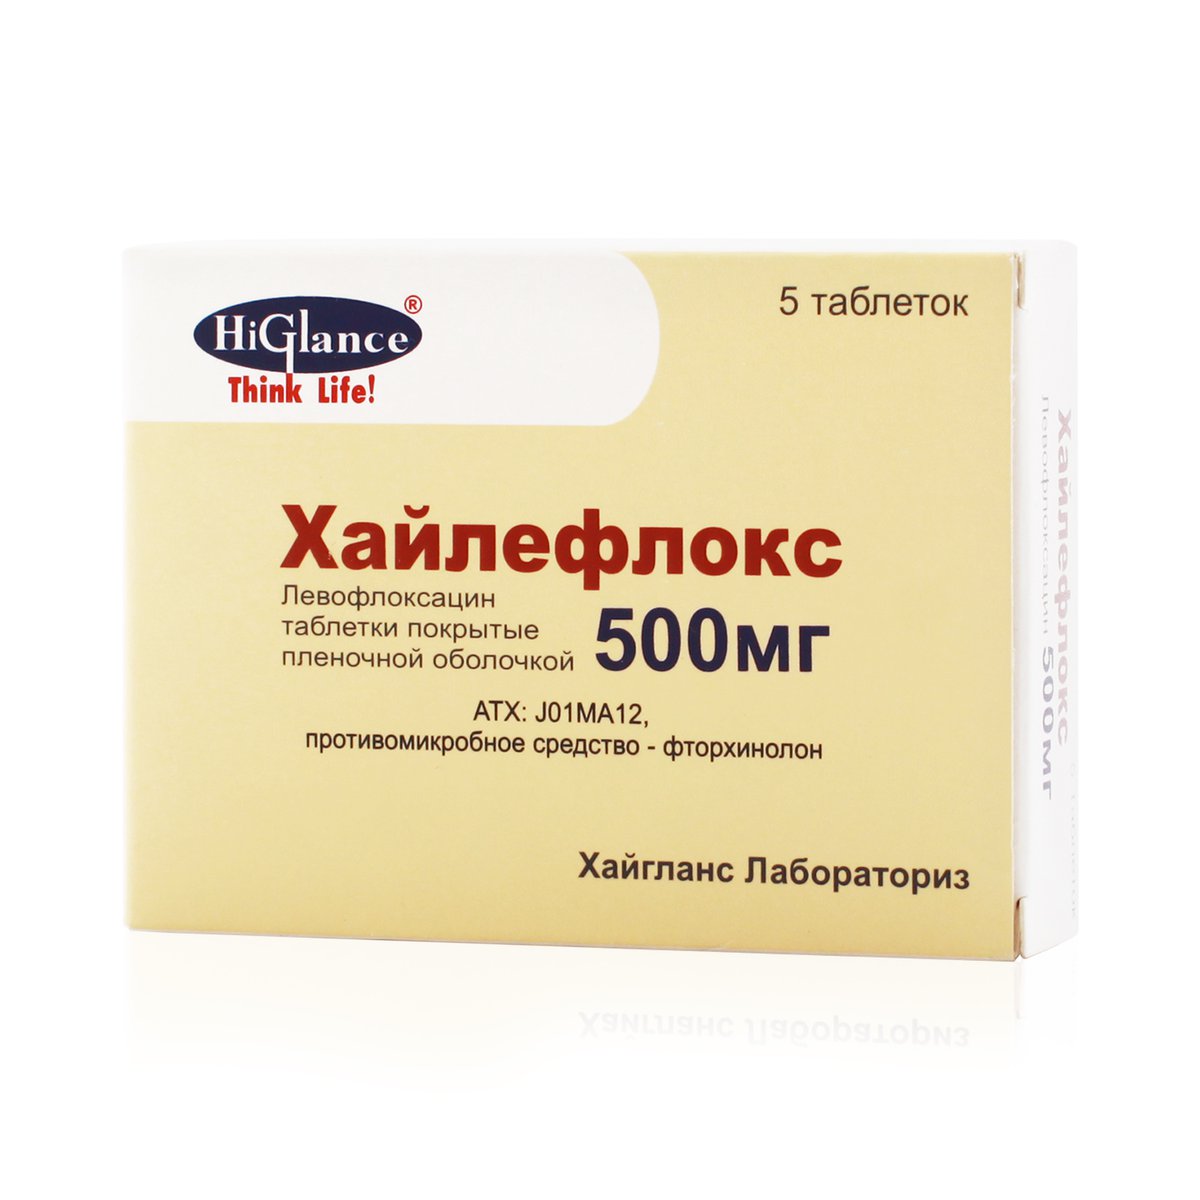 Хайлефлокс (таблетки, 5 шт, 500 мг) - цена,  онлайн  .